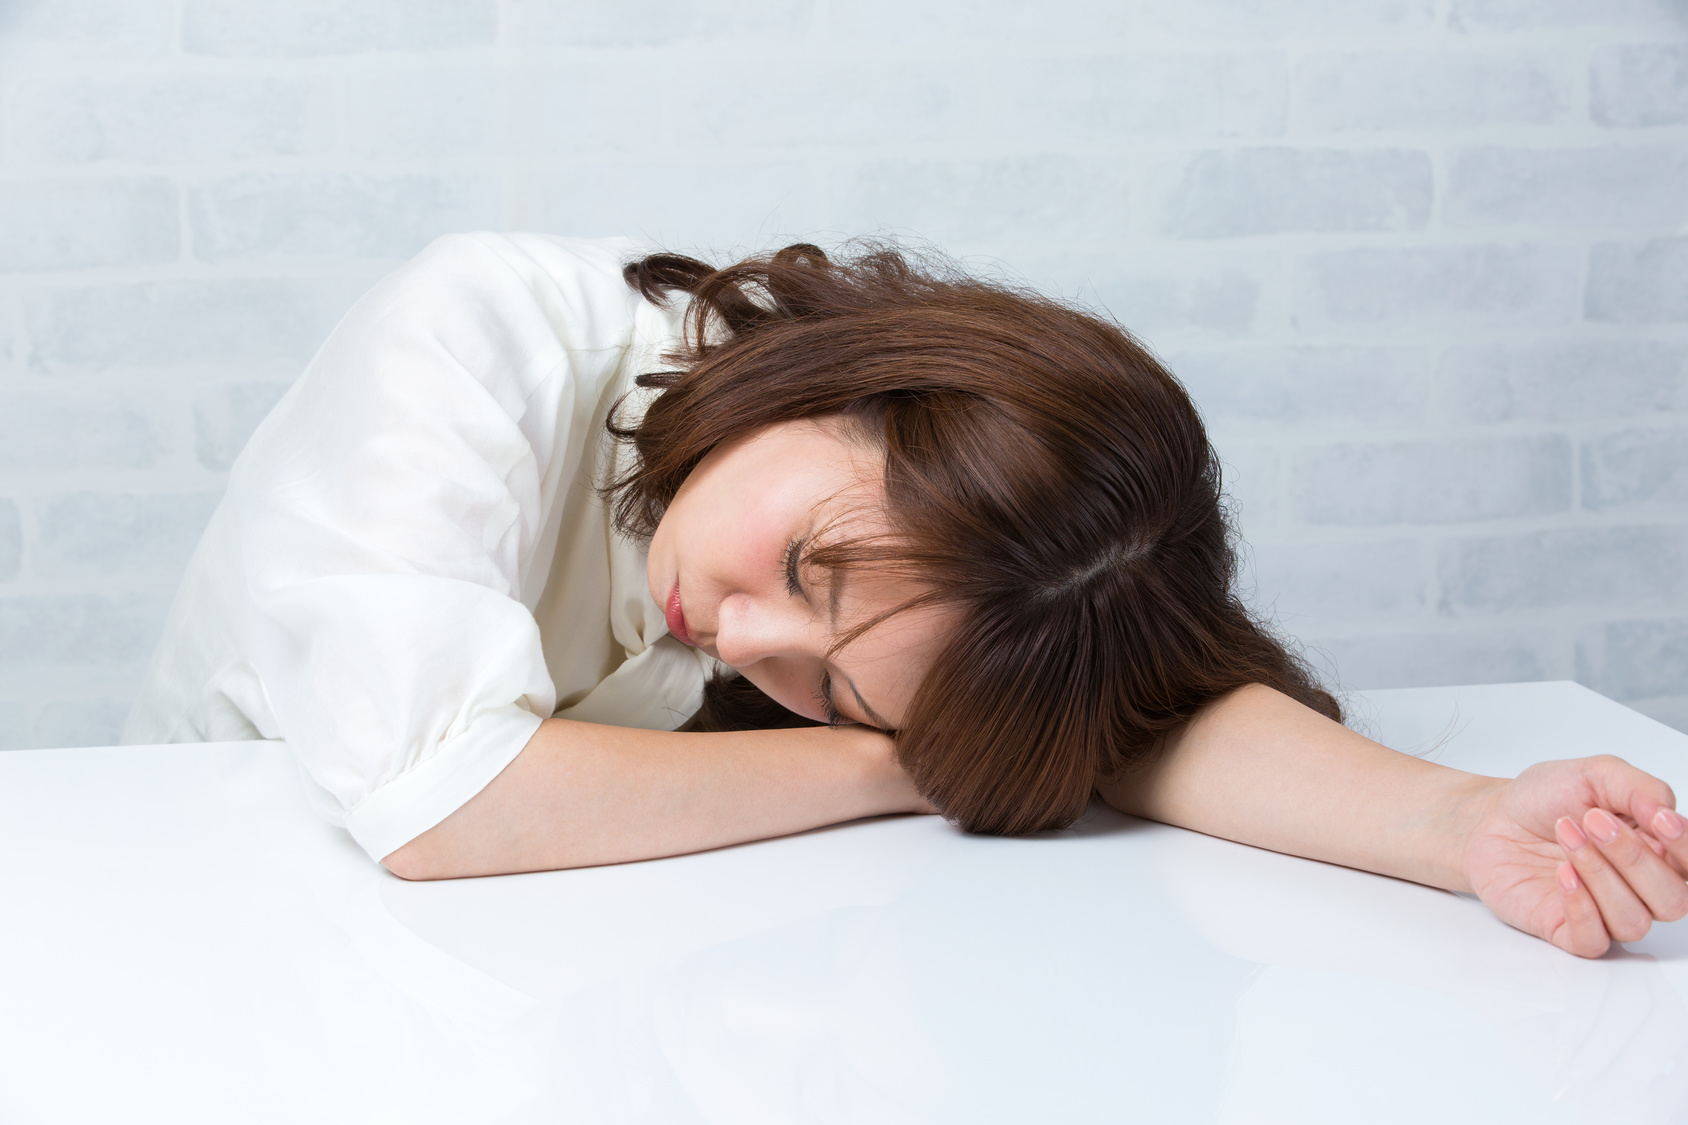 妊娠初期に異常なまでの眠気に襲われる理由と対処法